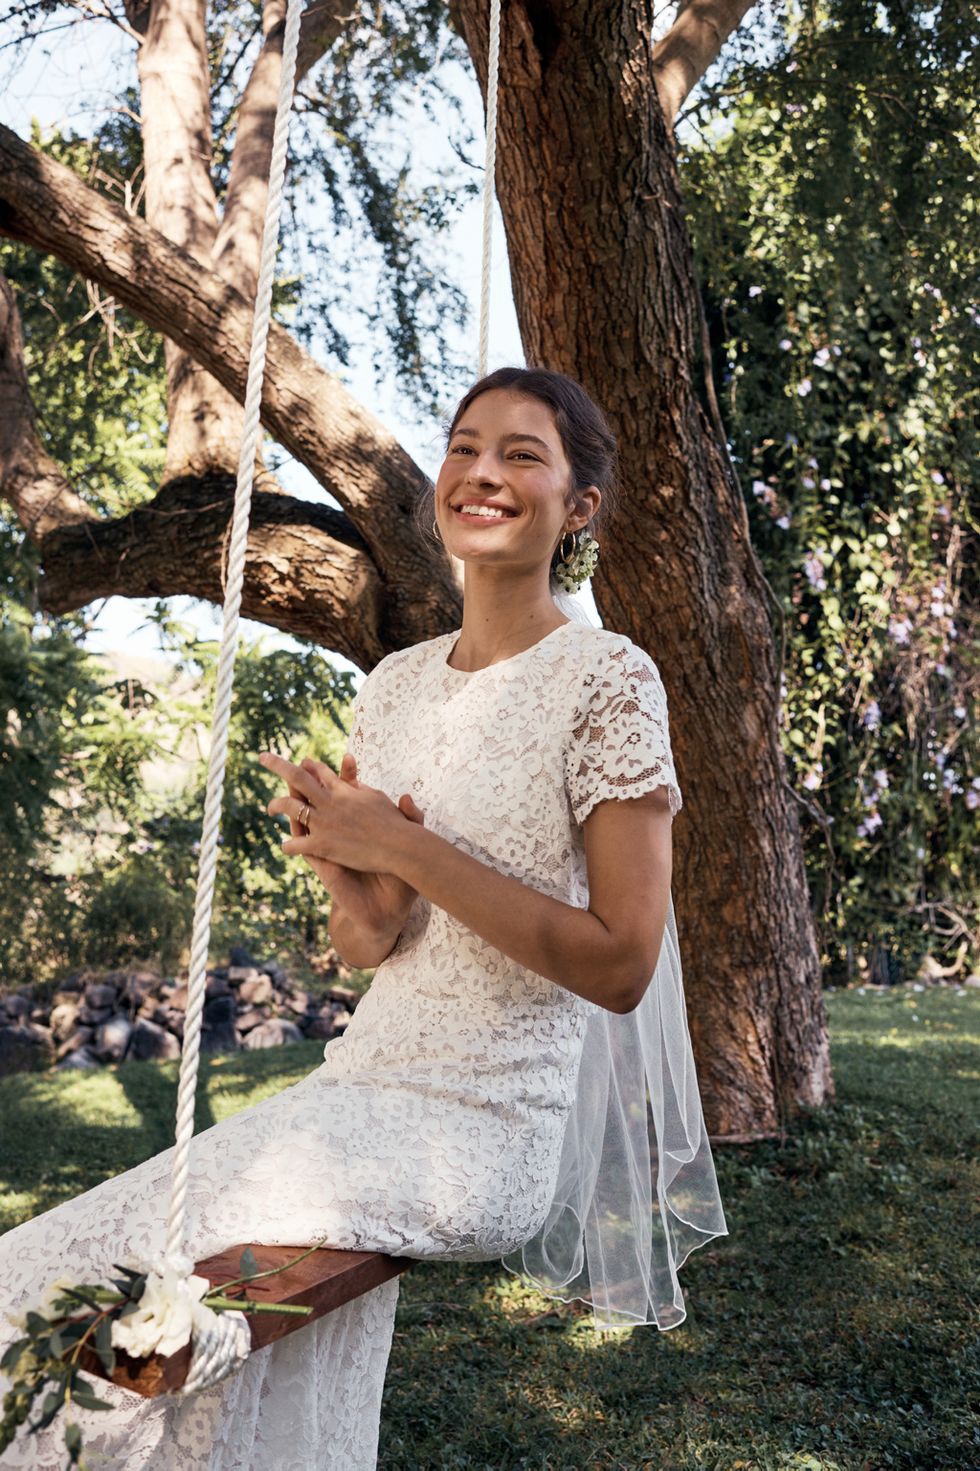 Vestidos de novia sencillos y baratos: lo último de H&M